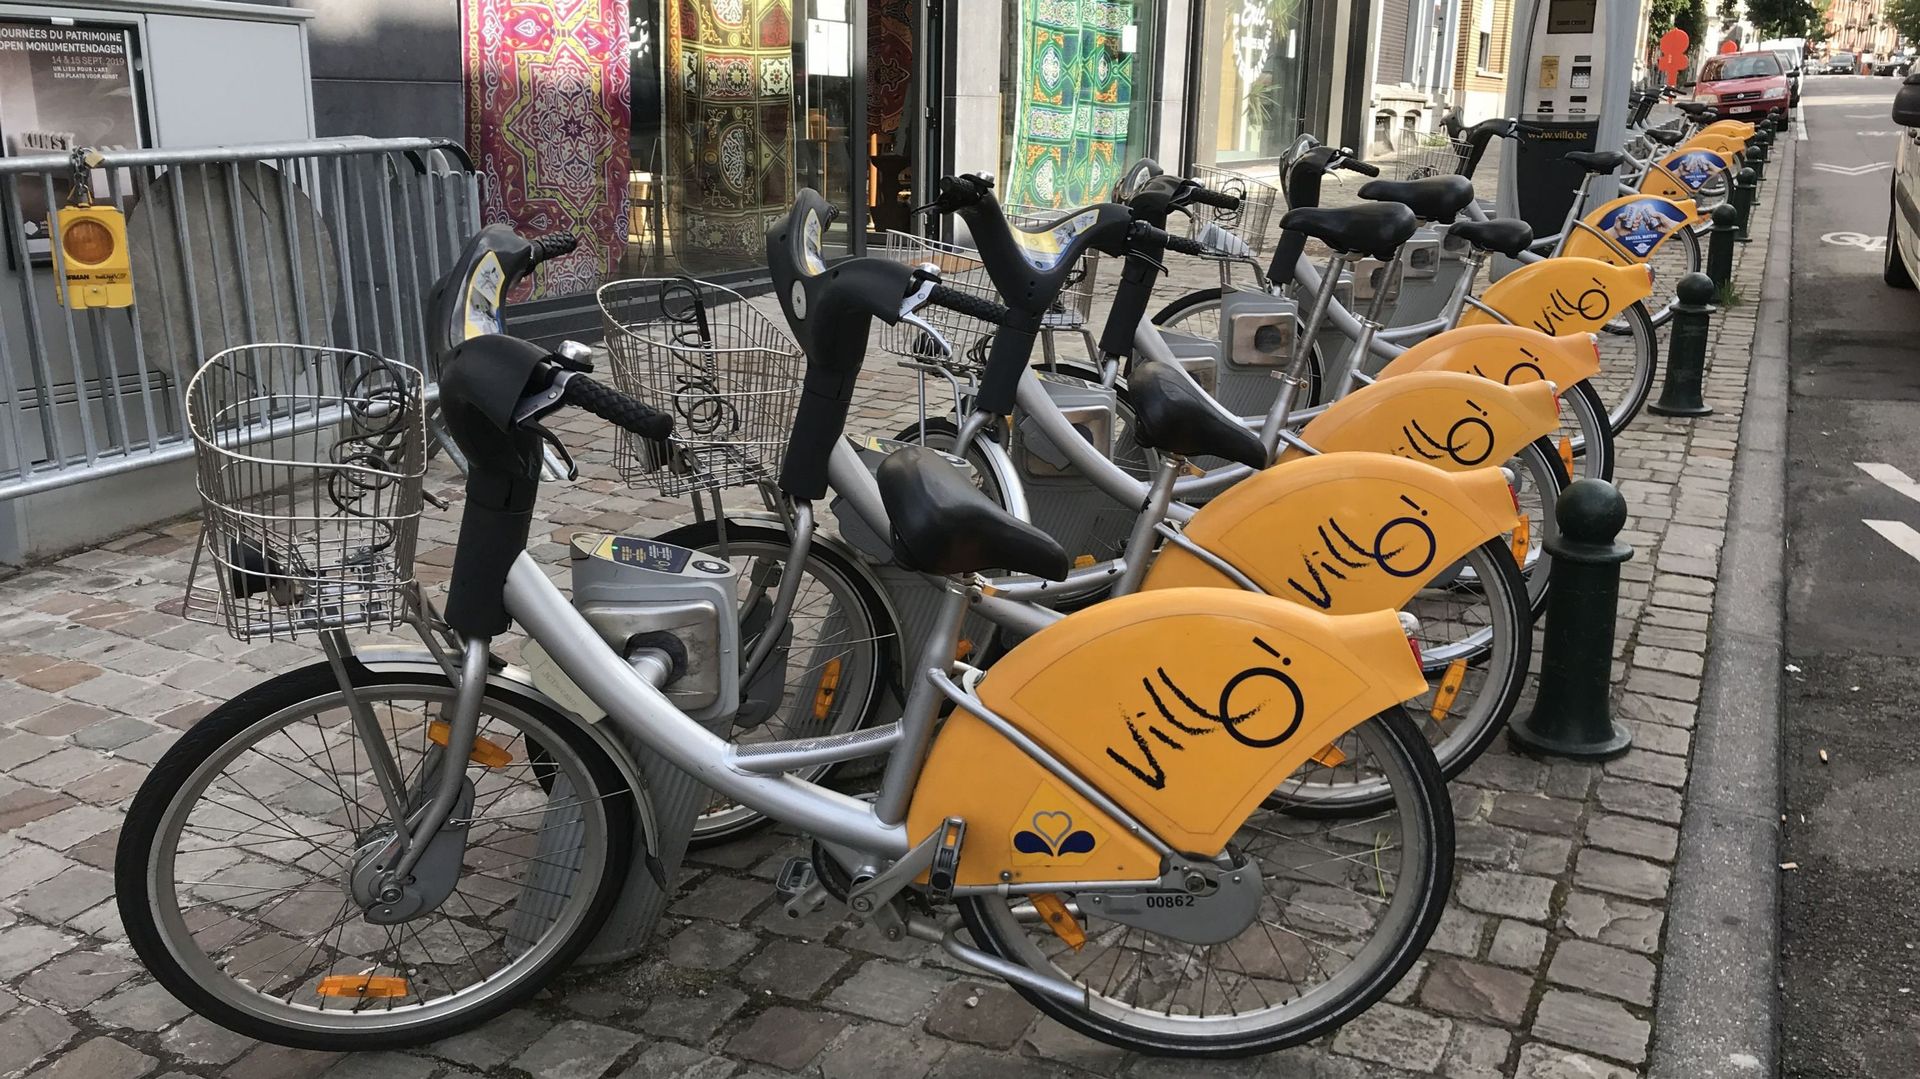 Villo! annonce que des vélos électriques seront bientôt disponibles pour un prix de 4,15 euros par mois.